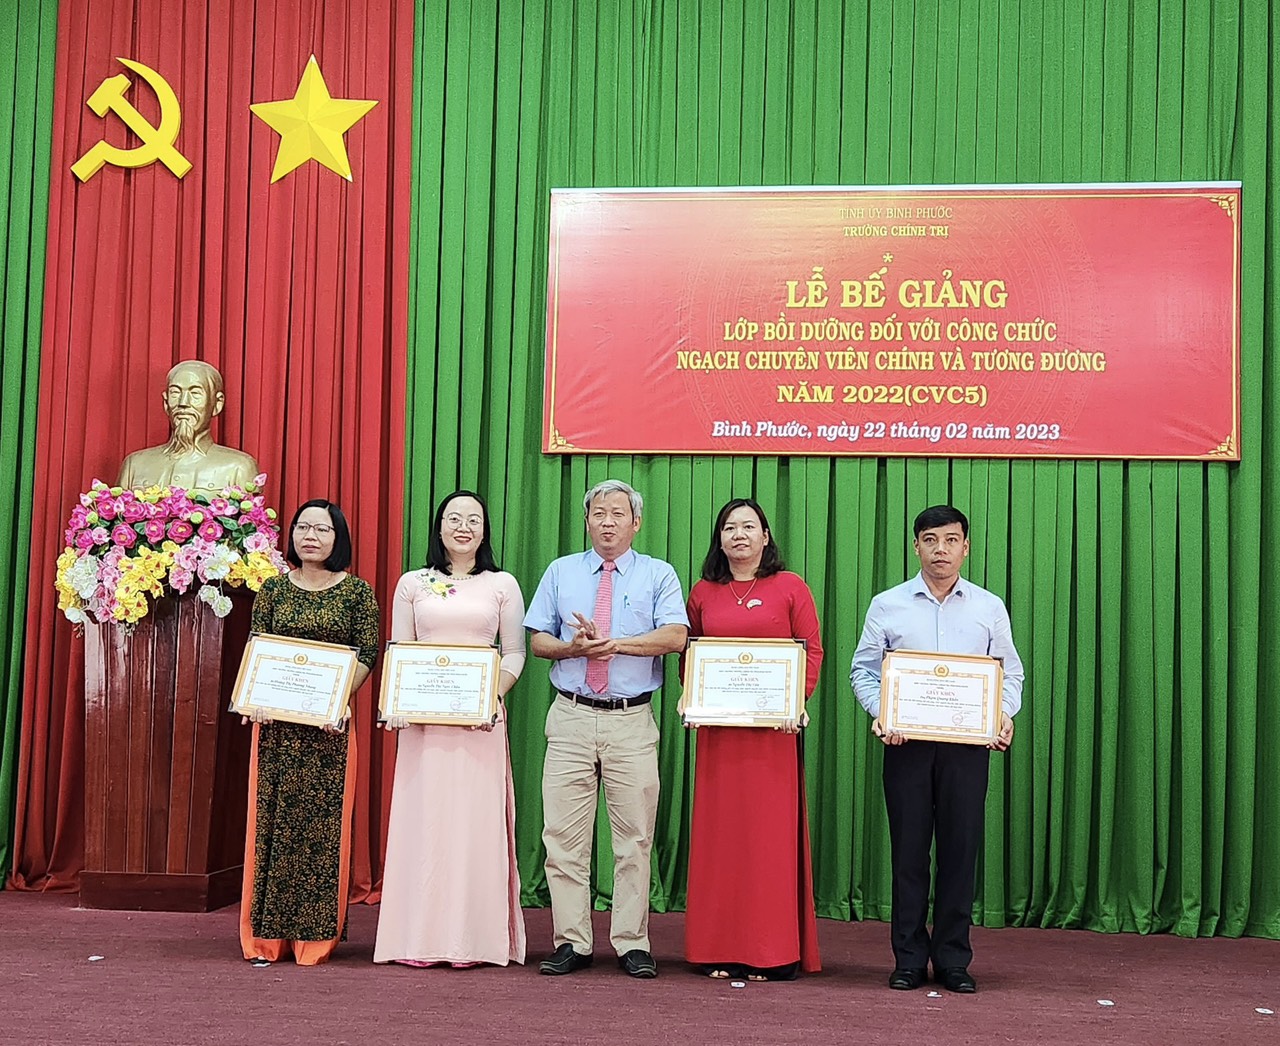 Phó Hiệu trưởng Đỗ Tất Thành tặng giấy khen cho 4 học viên có kết quả học tập tốt